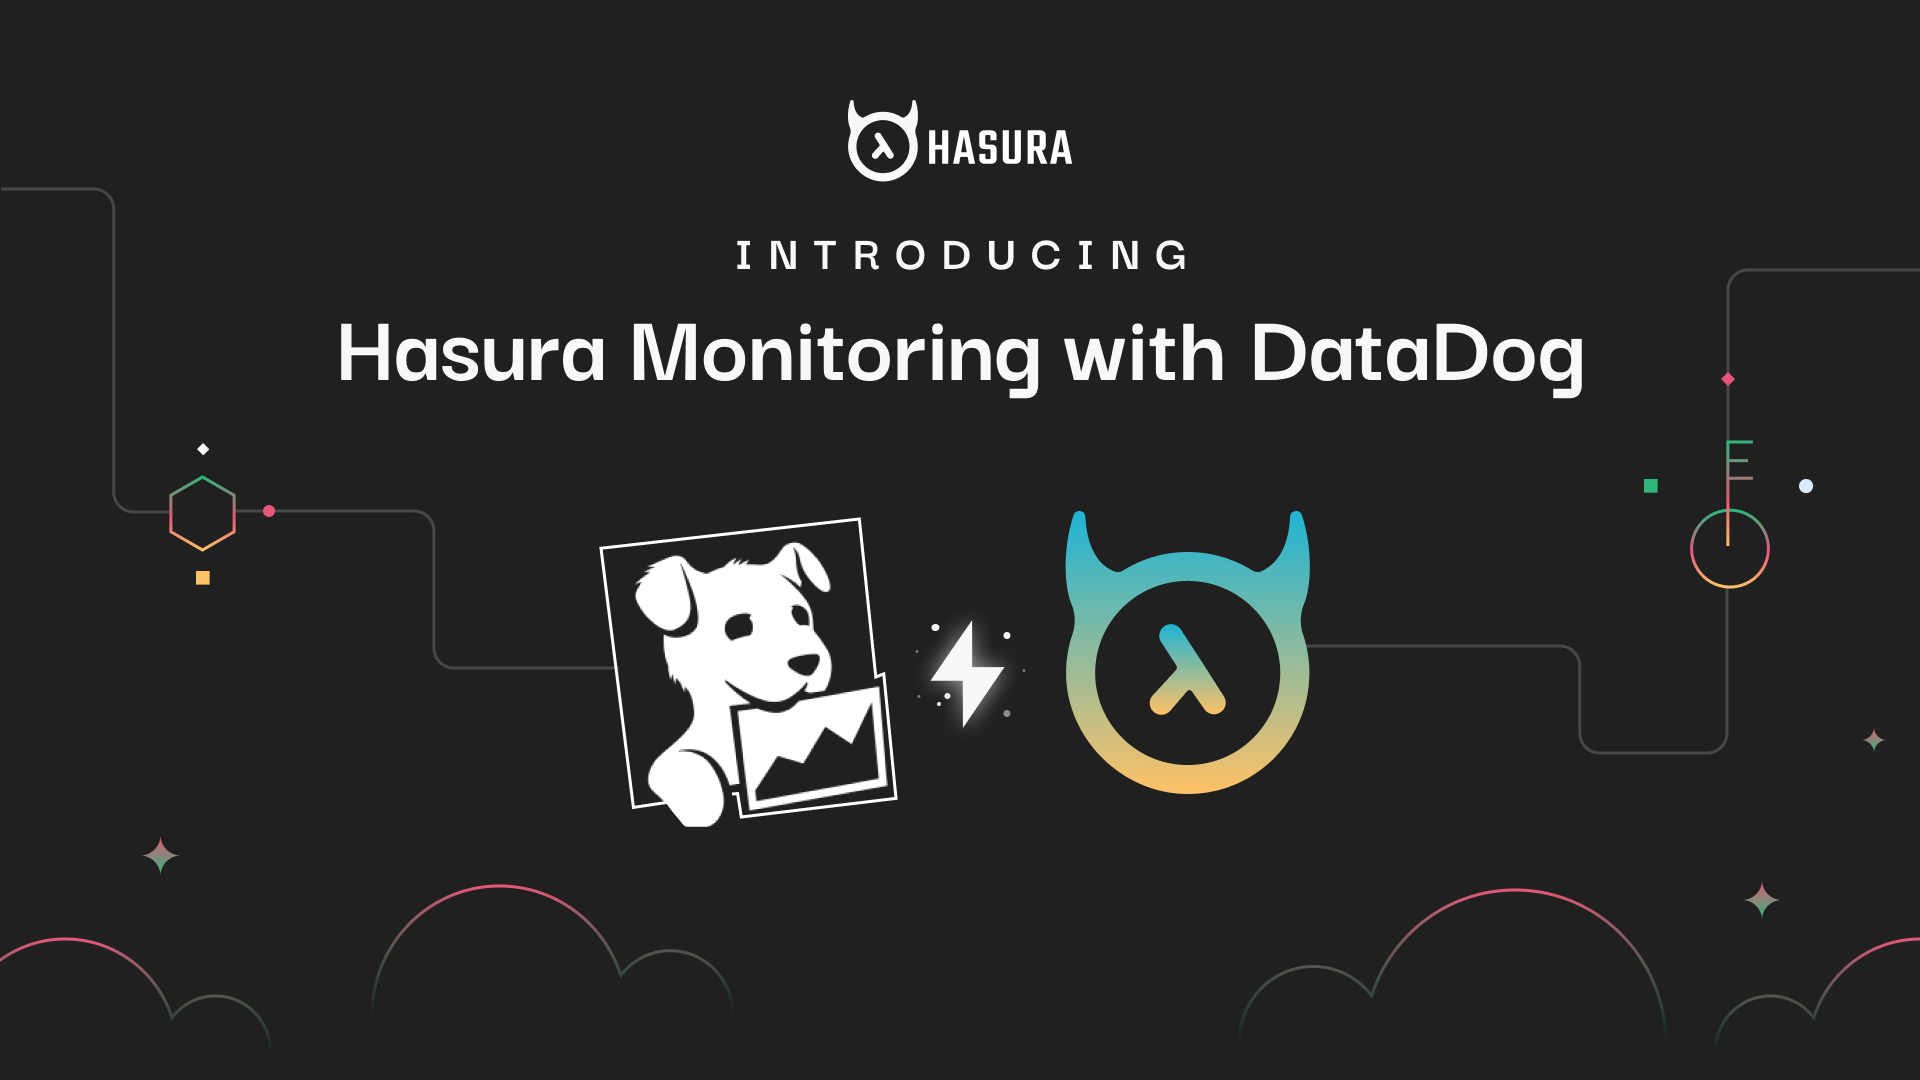 Introducing Hasura Monitoring with DataDog